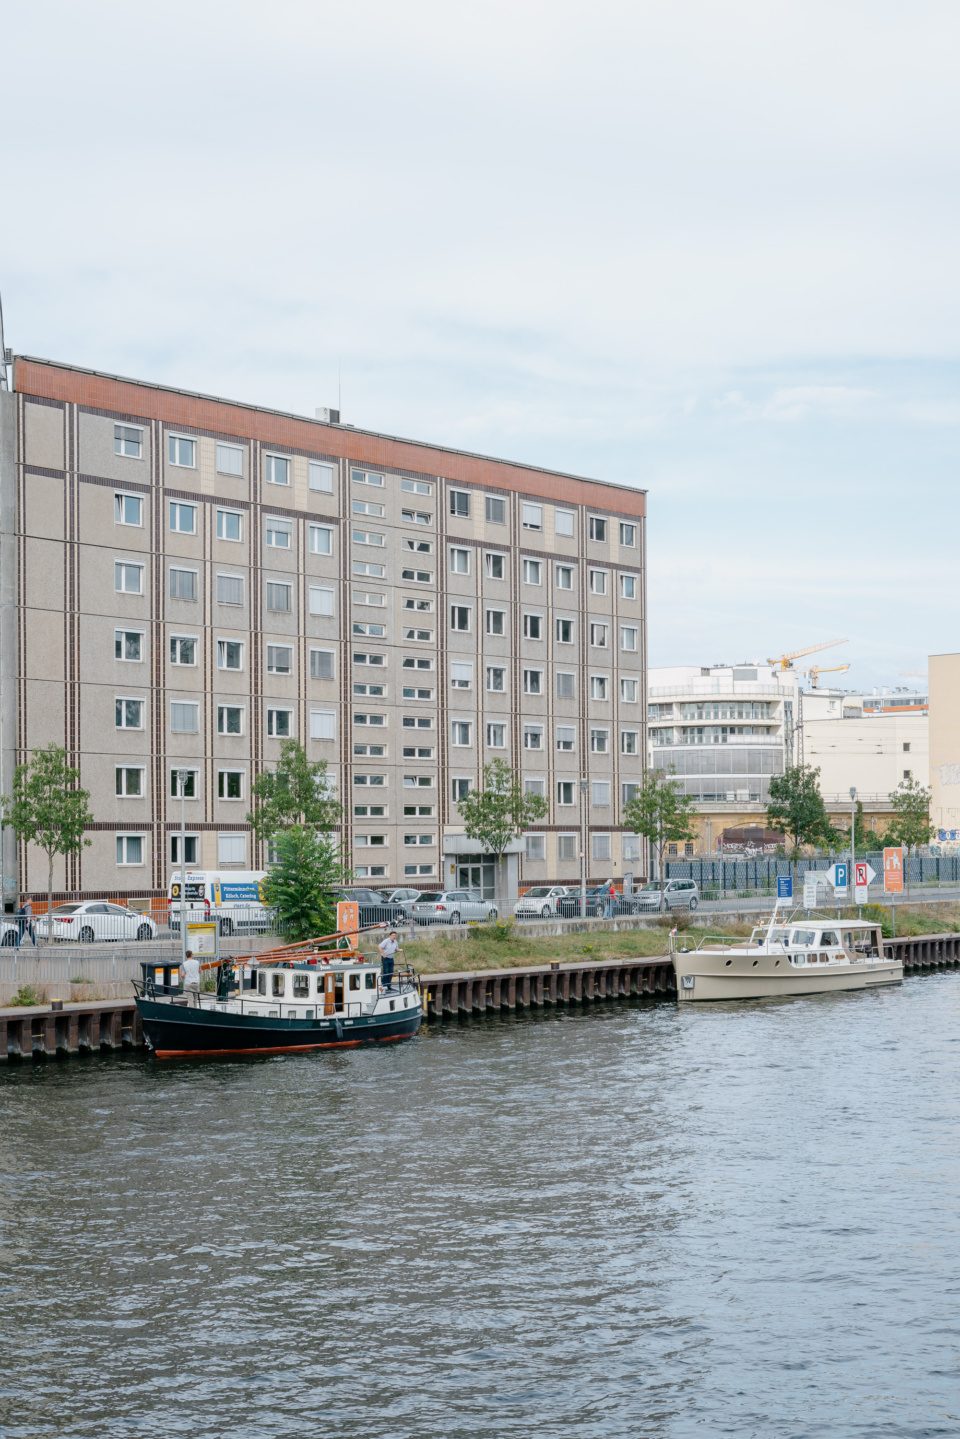 Spree river in Berlin